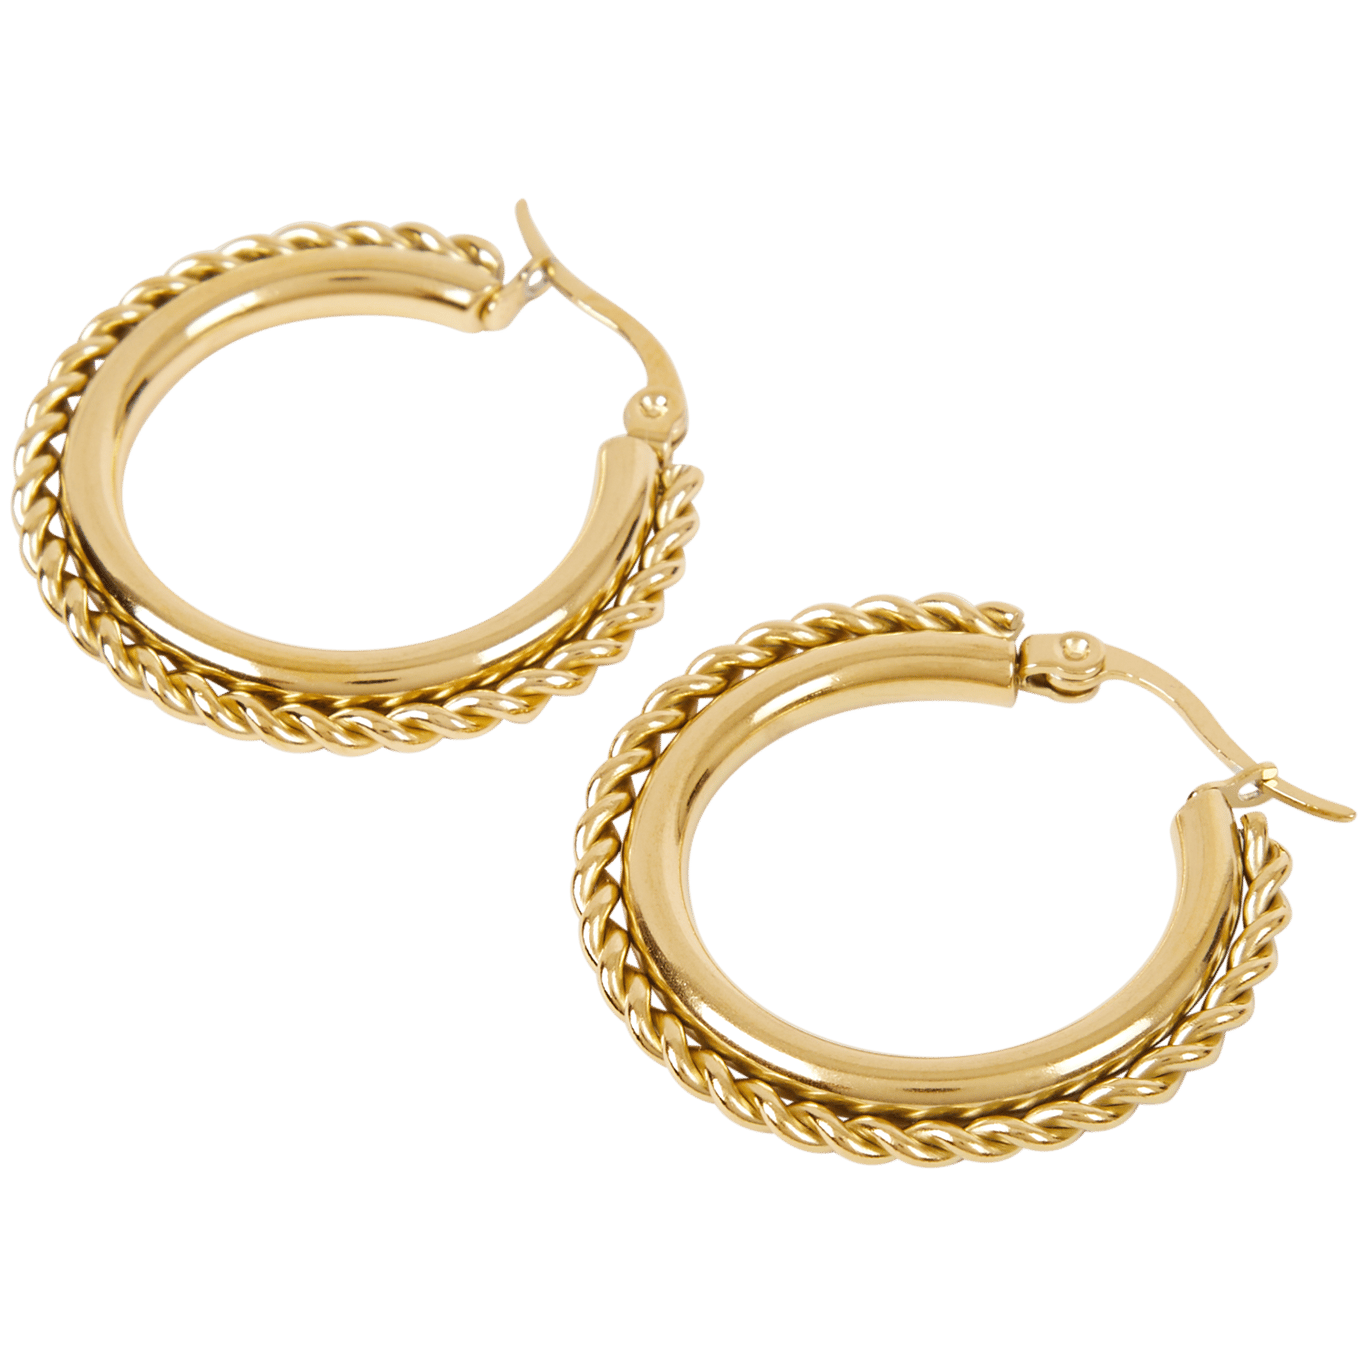 Gold plated oorbellen